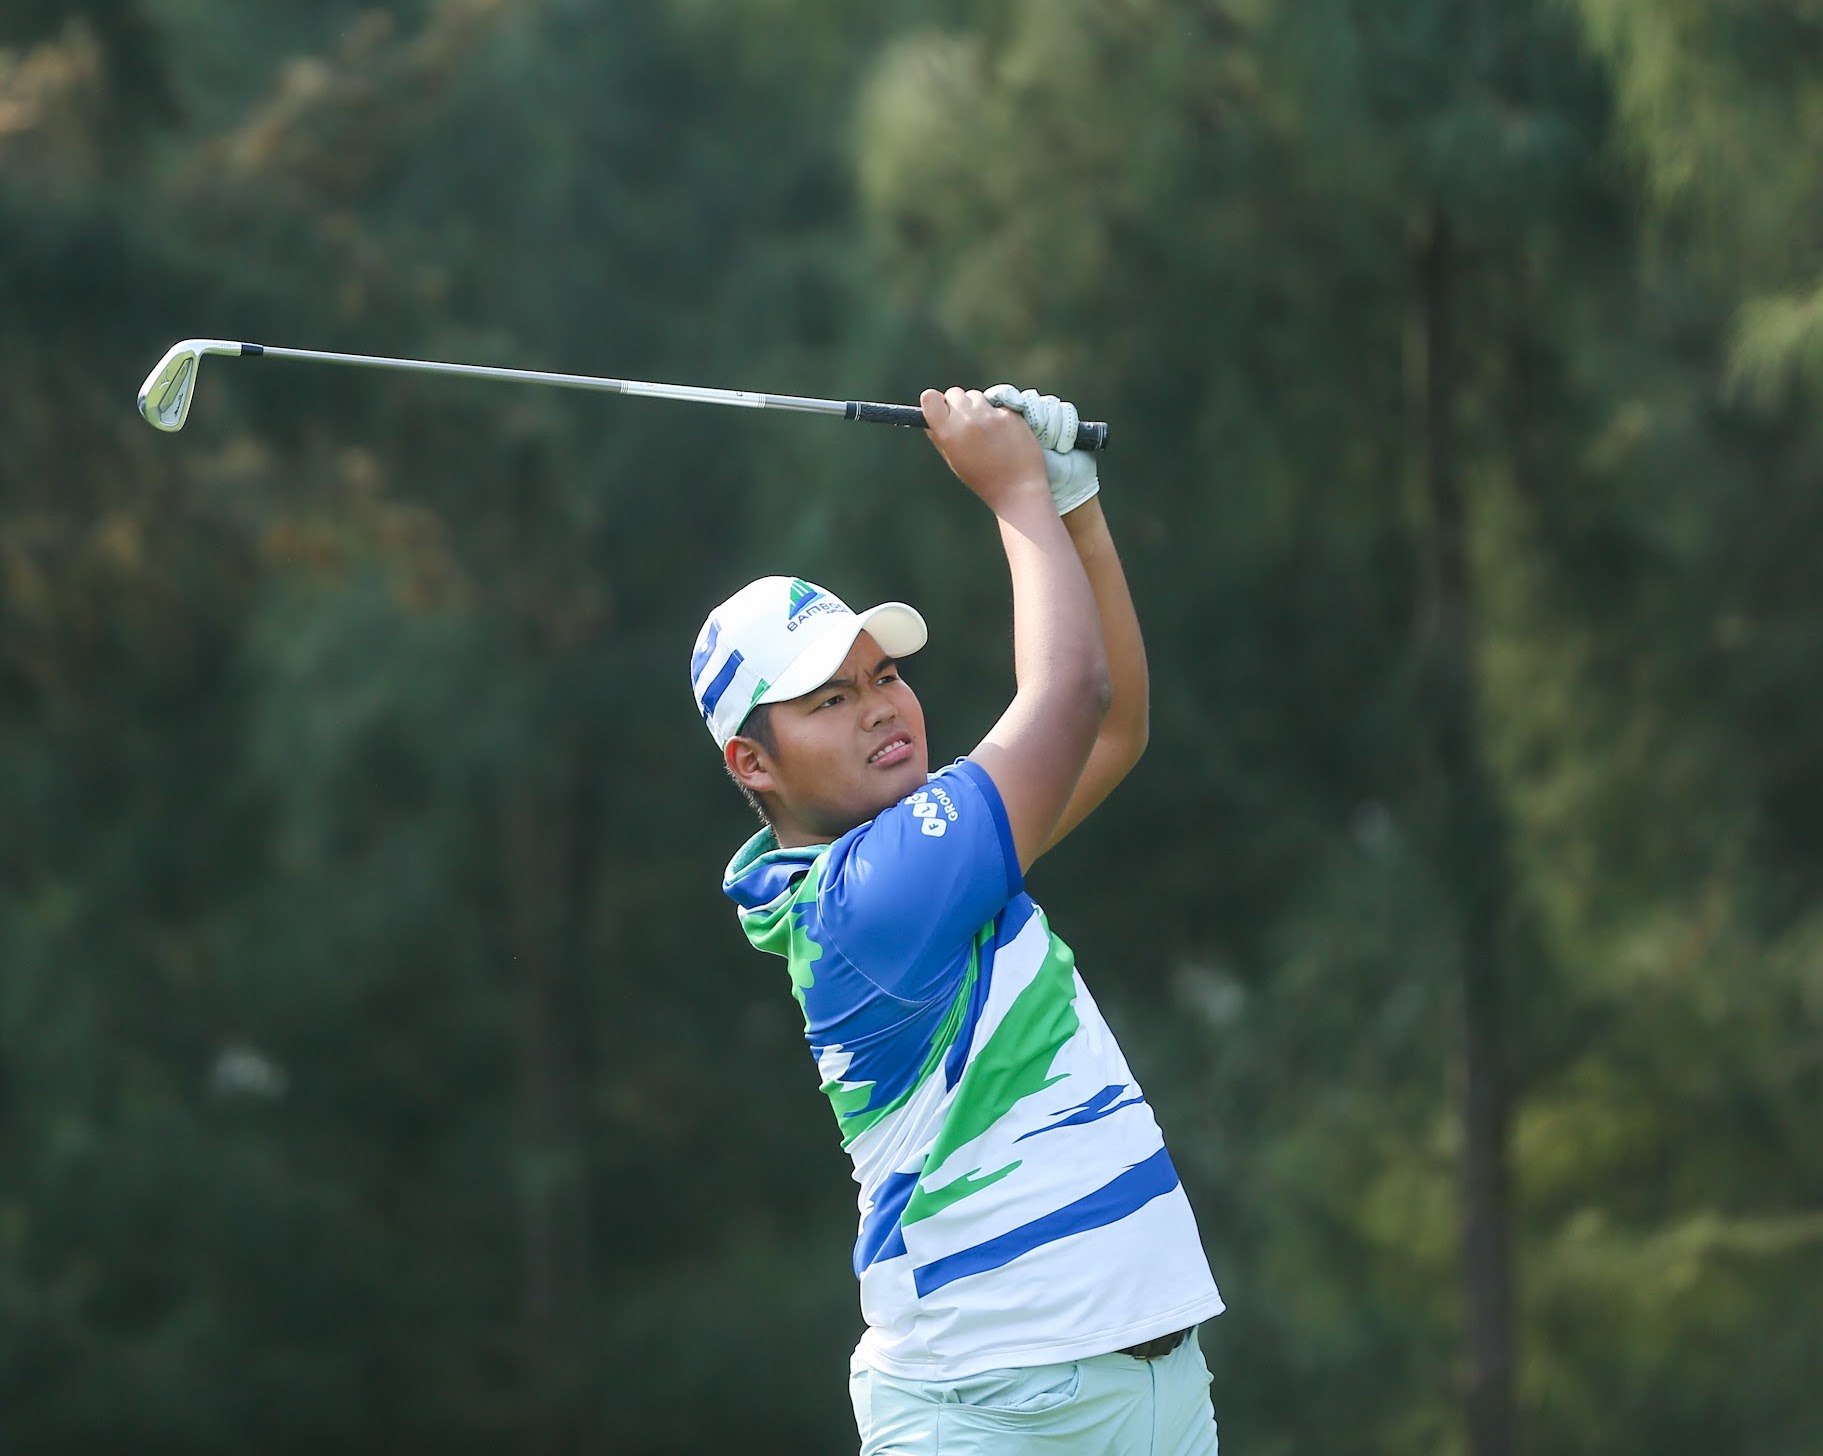 
Golfer trẻ Nguyễn Đức Sơn vô địch Bamboo Airways Golf Tournament 2022 - Flight to London - Ảnh 1.